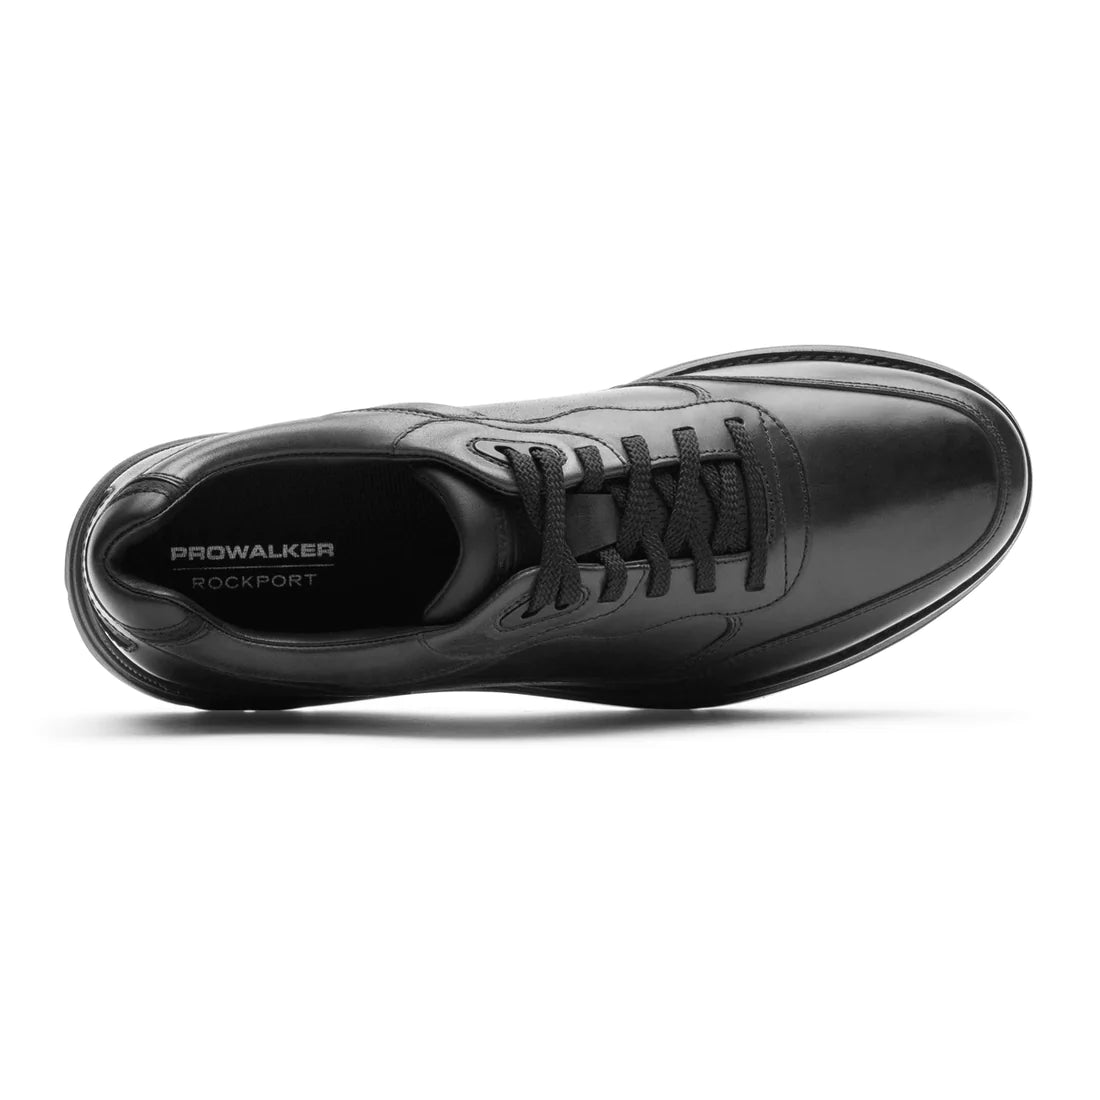 Rockport Men's Prowalker Next Sneaker - Black